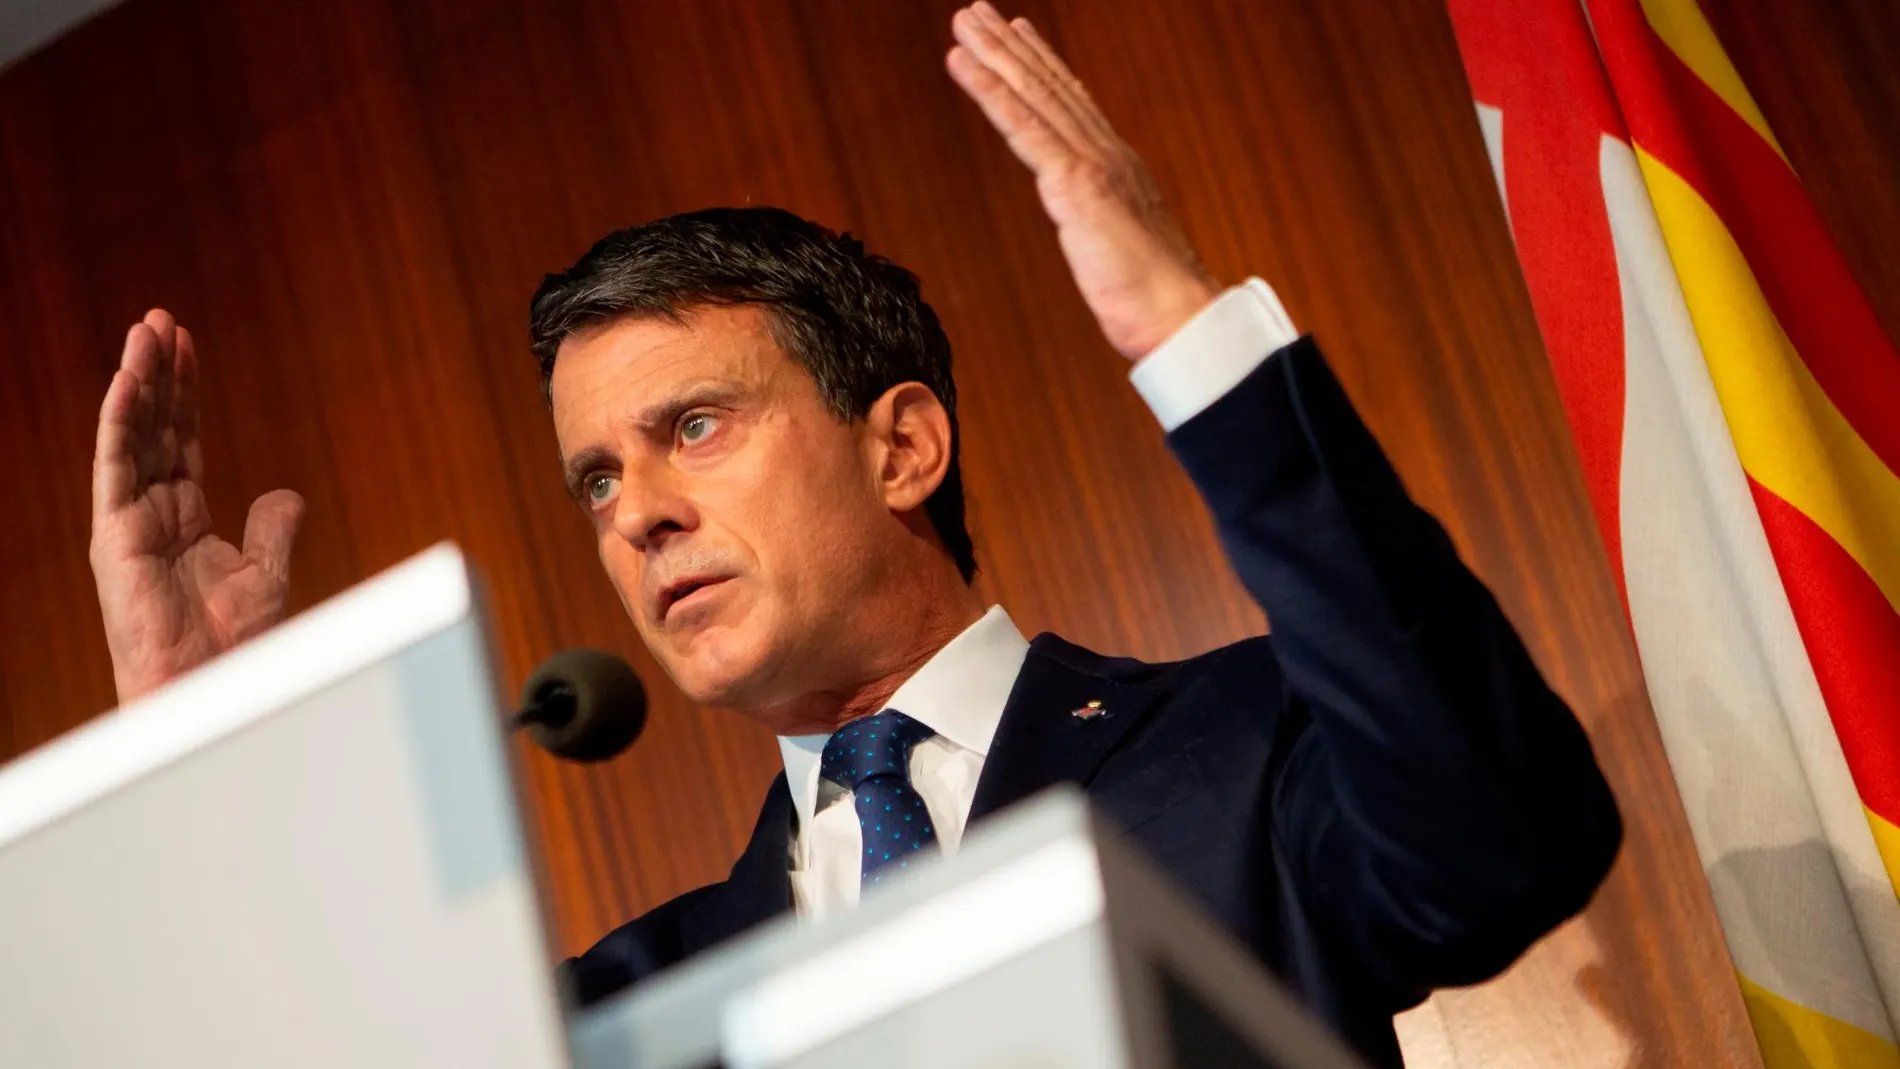 Manuel Valls: “El reclamo independentista” trata de entregar “Cataluña a los catalanes”